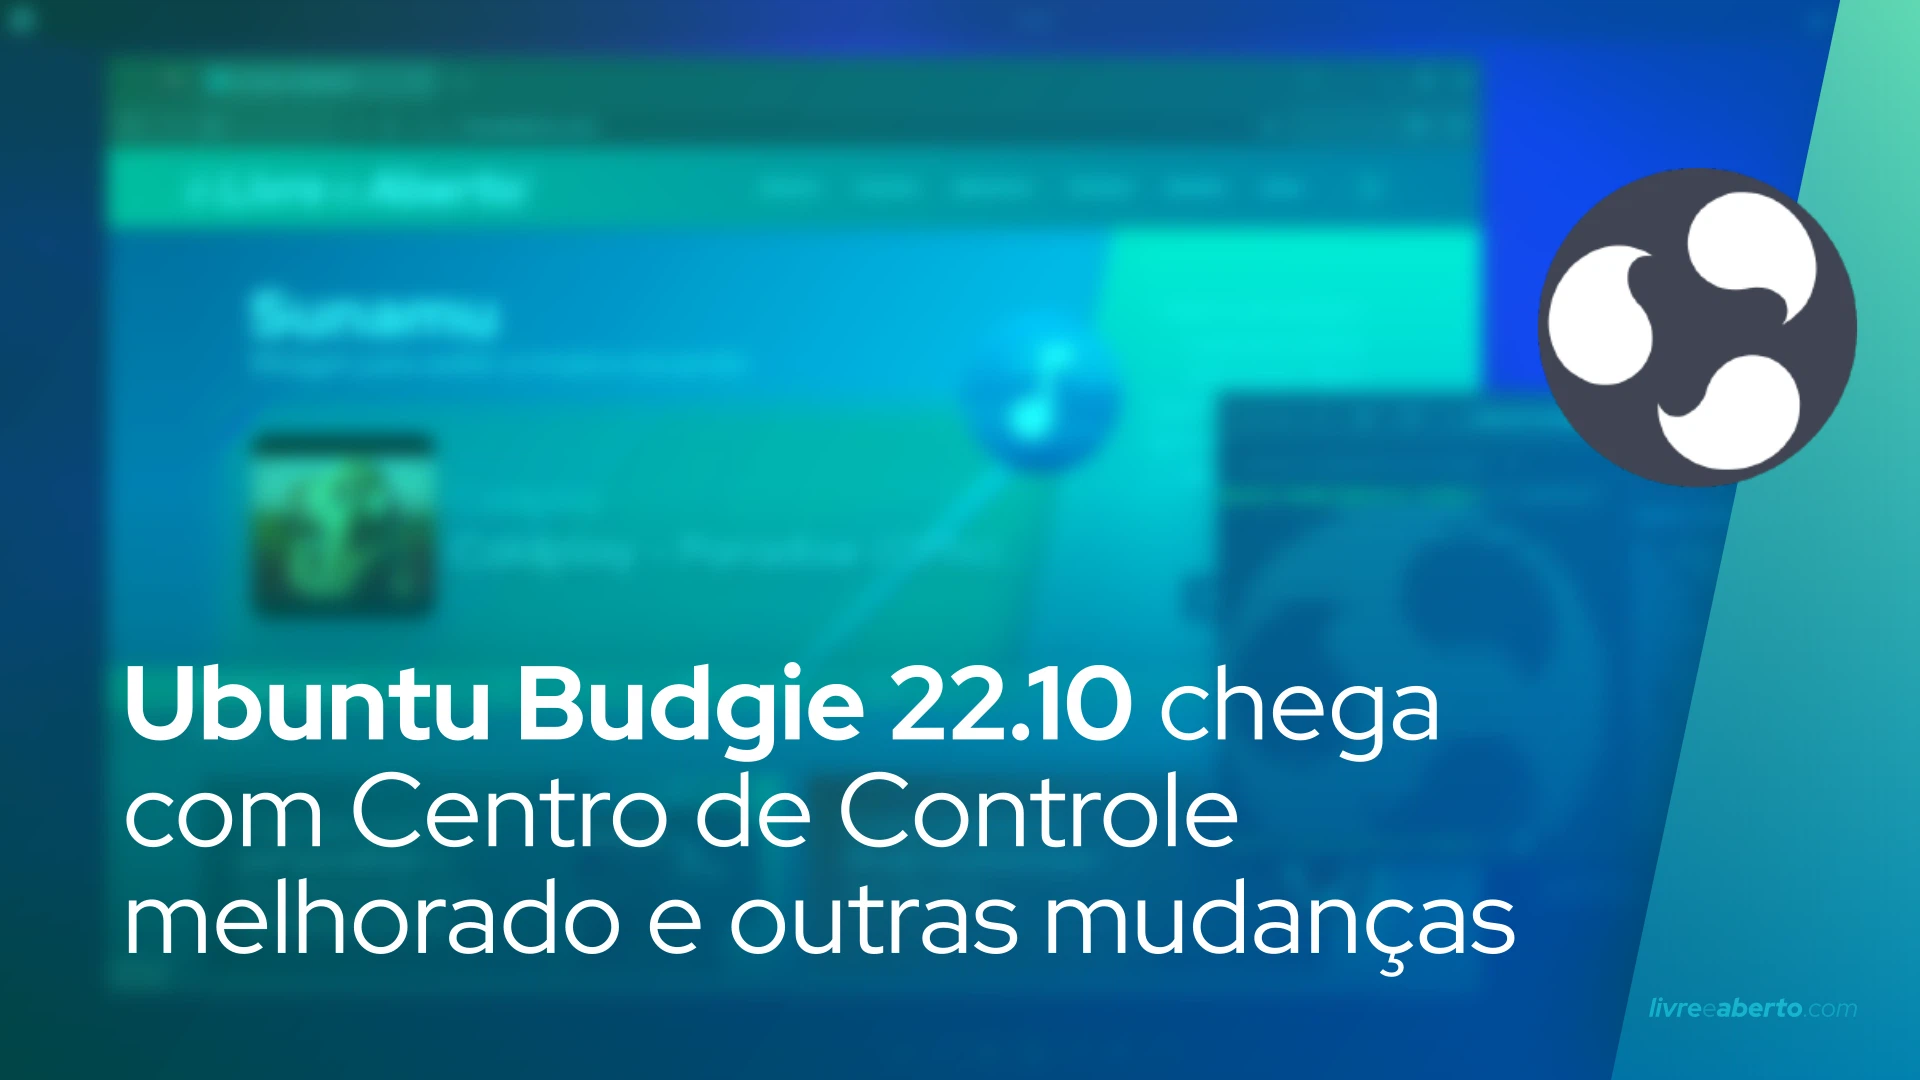 Ubuntu Budgie 22.10 chega com Centro de Controle melhorado e sem alguns aplicativos do GNOME